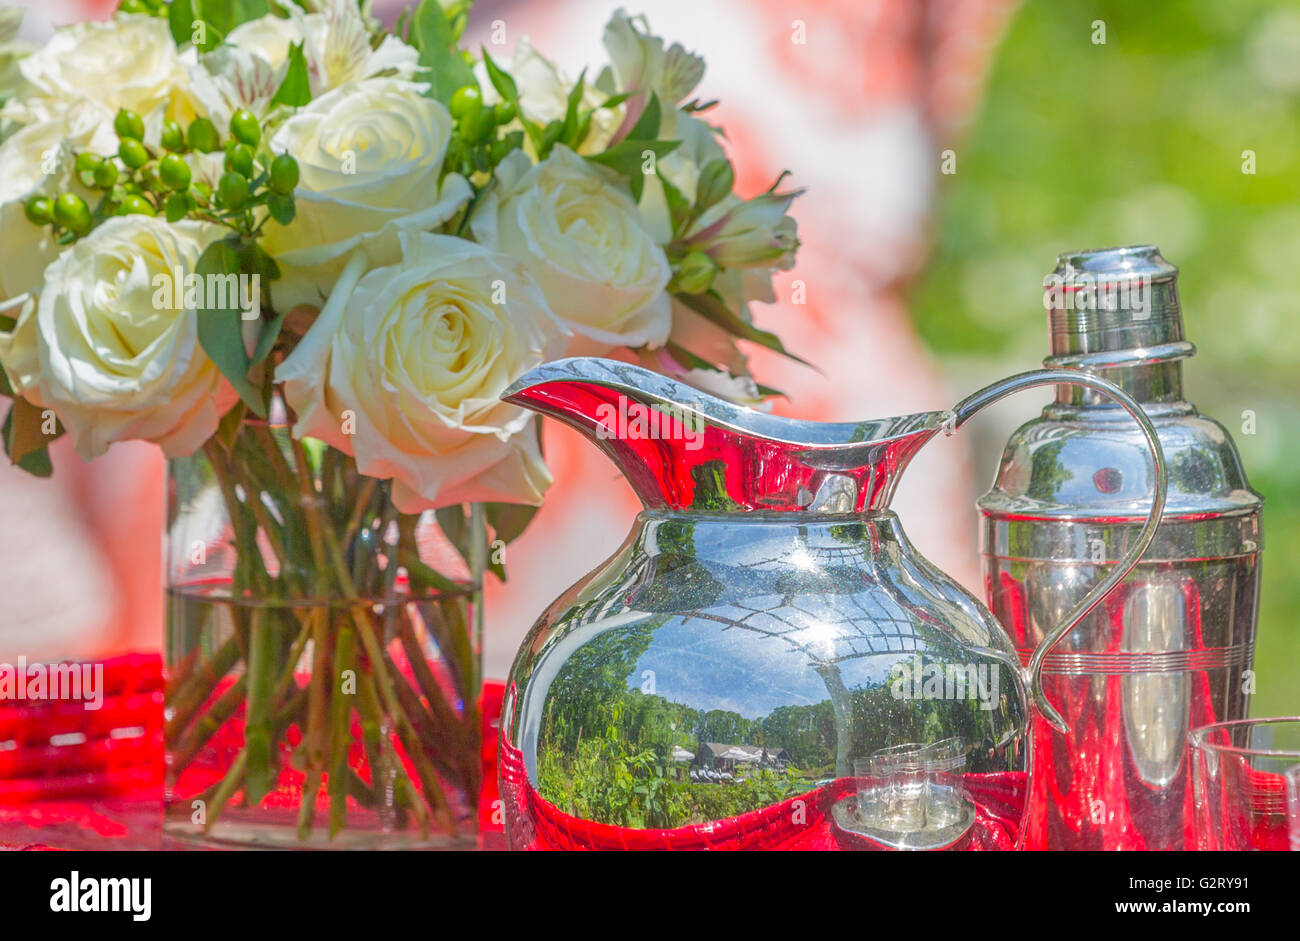 Stillleben mit silbernen Krug und Silber cocktail-Shaker, schneiden frische Rosen in Glasvase mit Wasser am roten Tisch Stockfoto